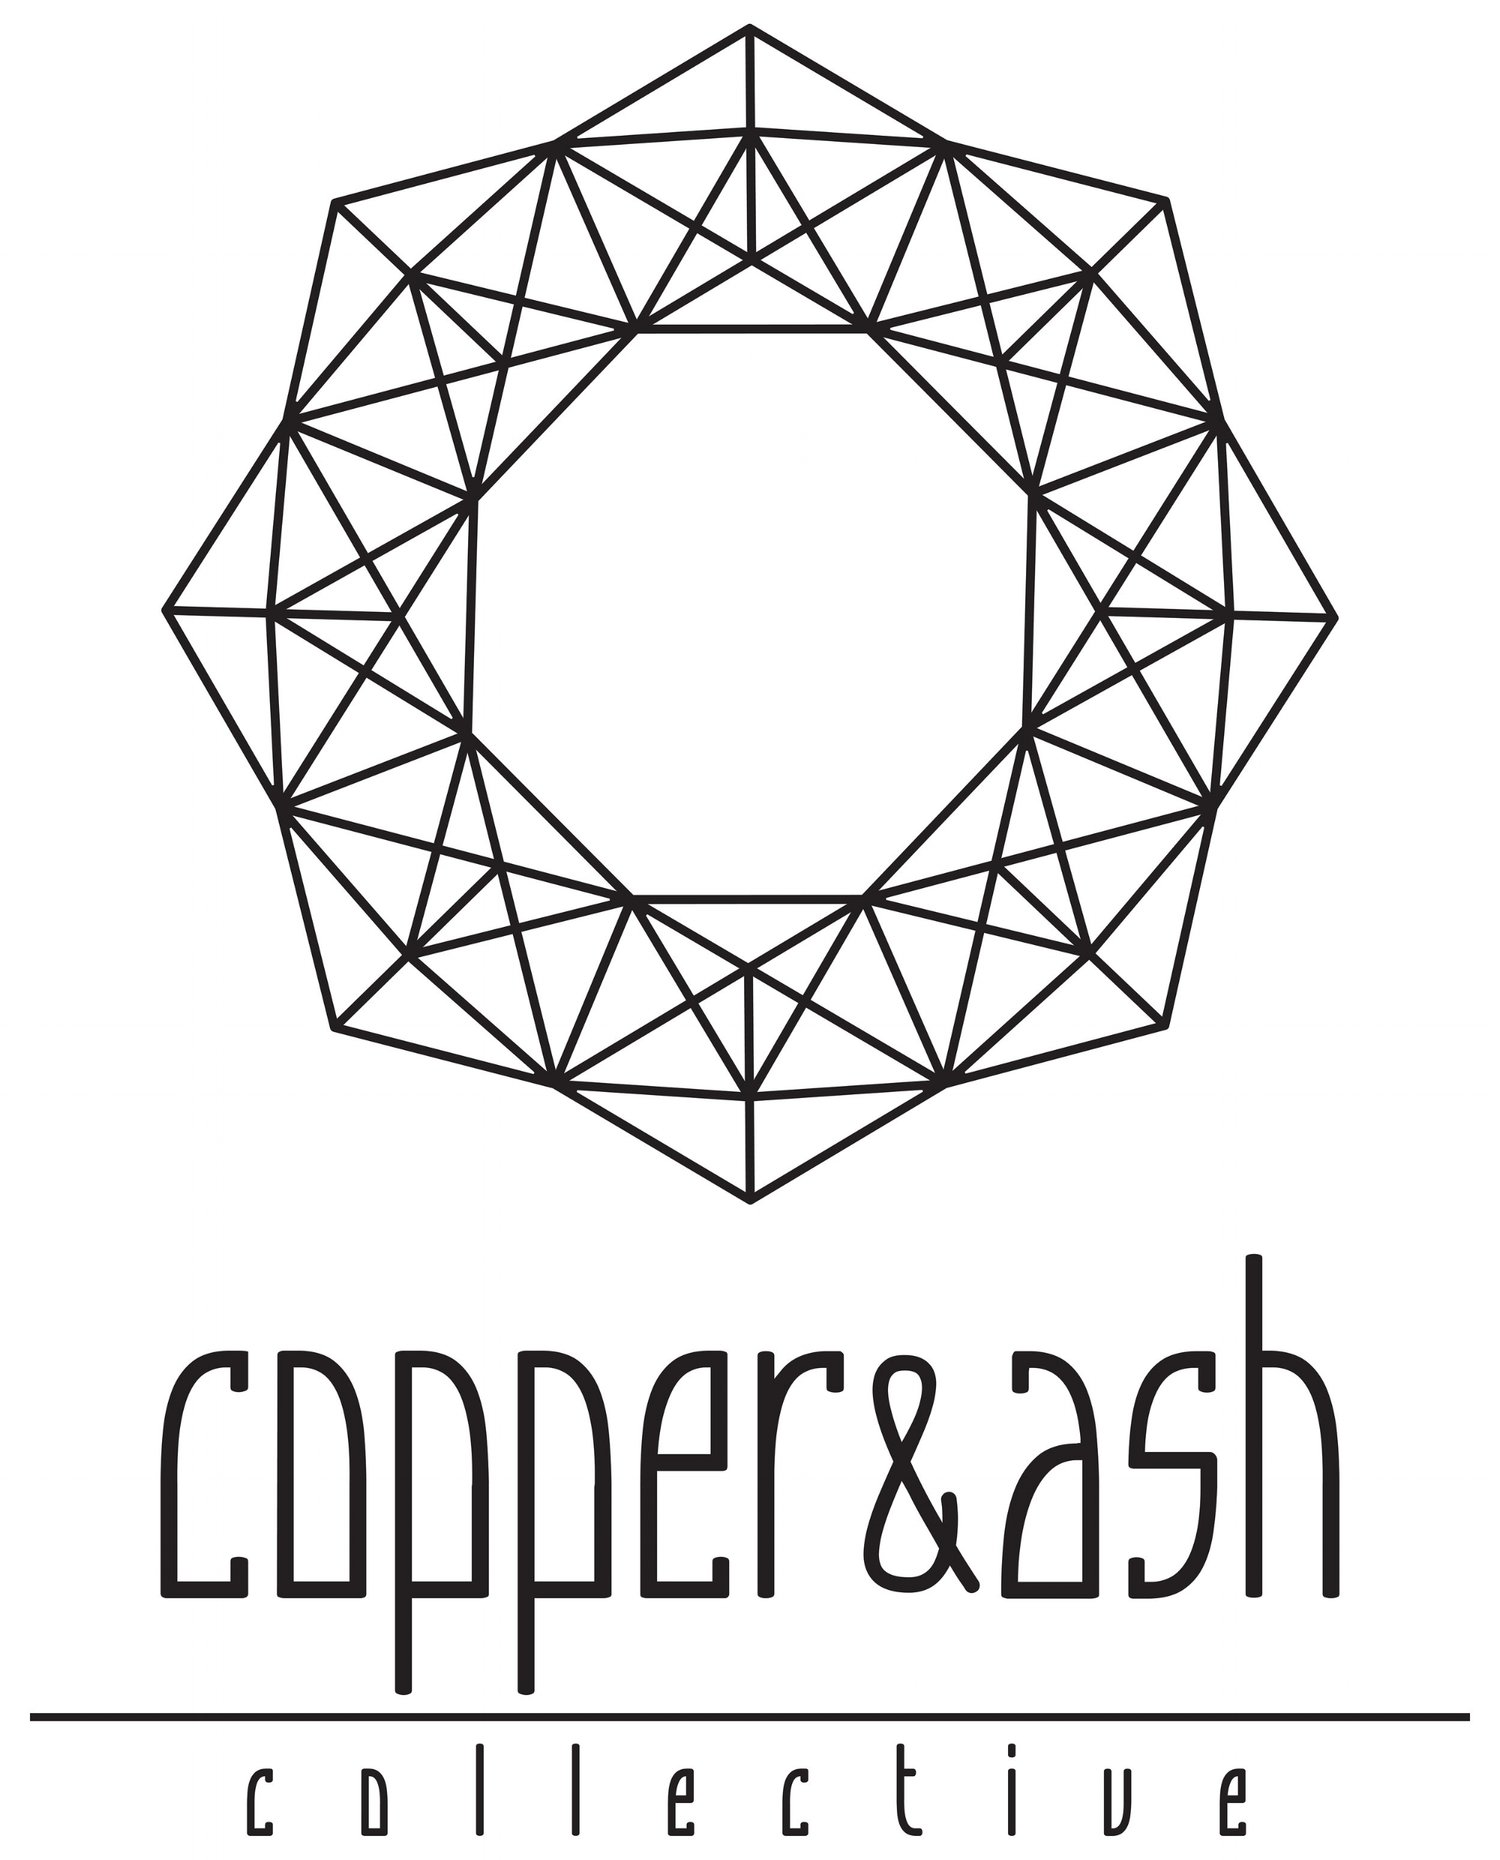 copper & ash collective